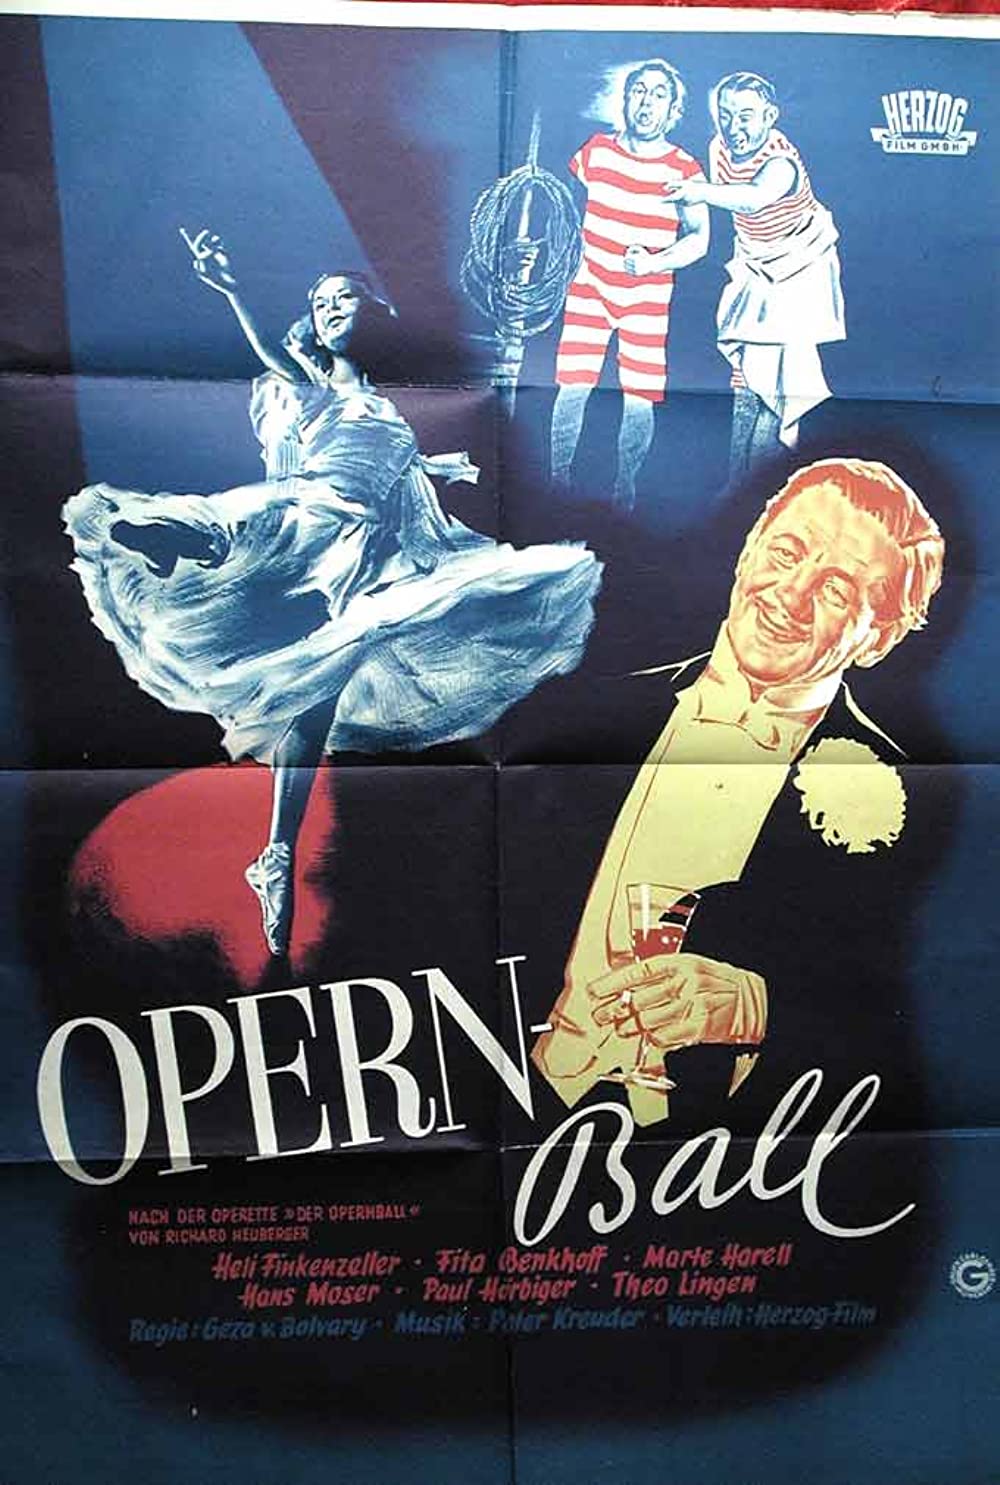 Filmbeschreibung zu Opernball